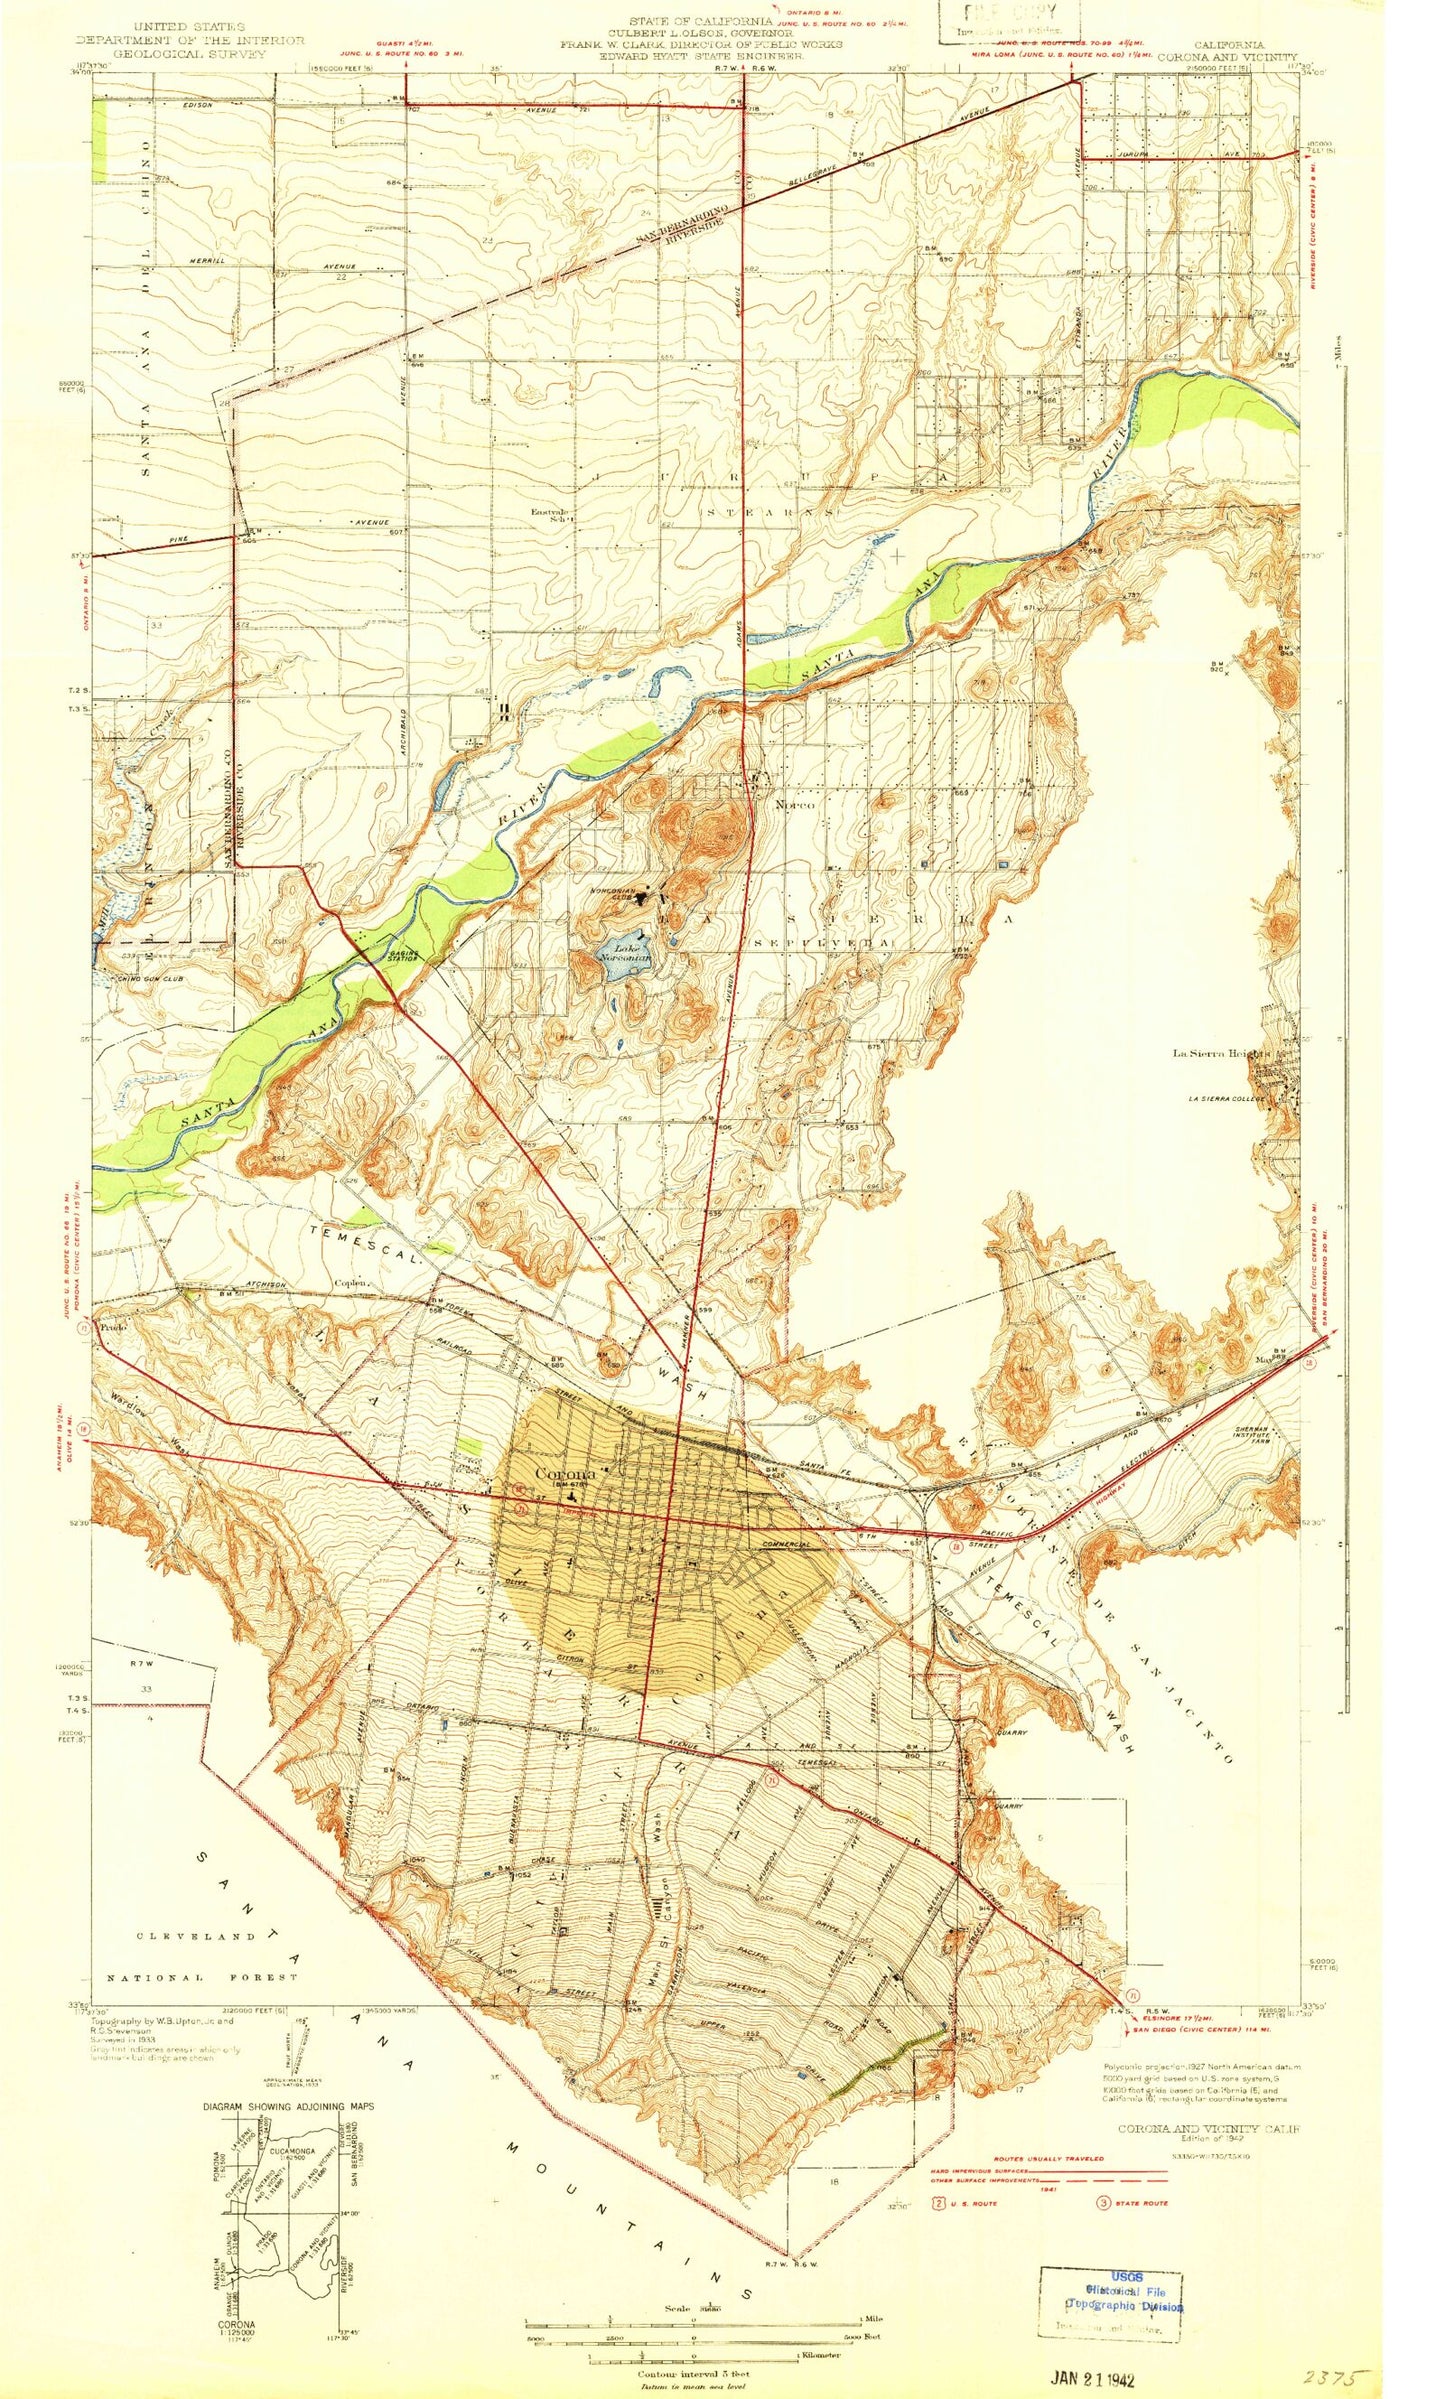 Classic USGS Corona North California 7.5'x7.5' Topo Map Image